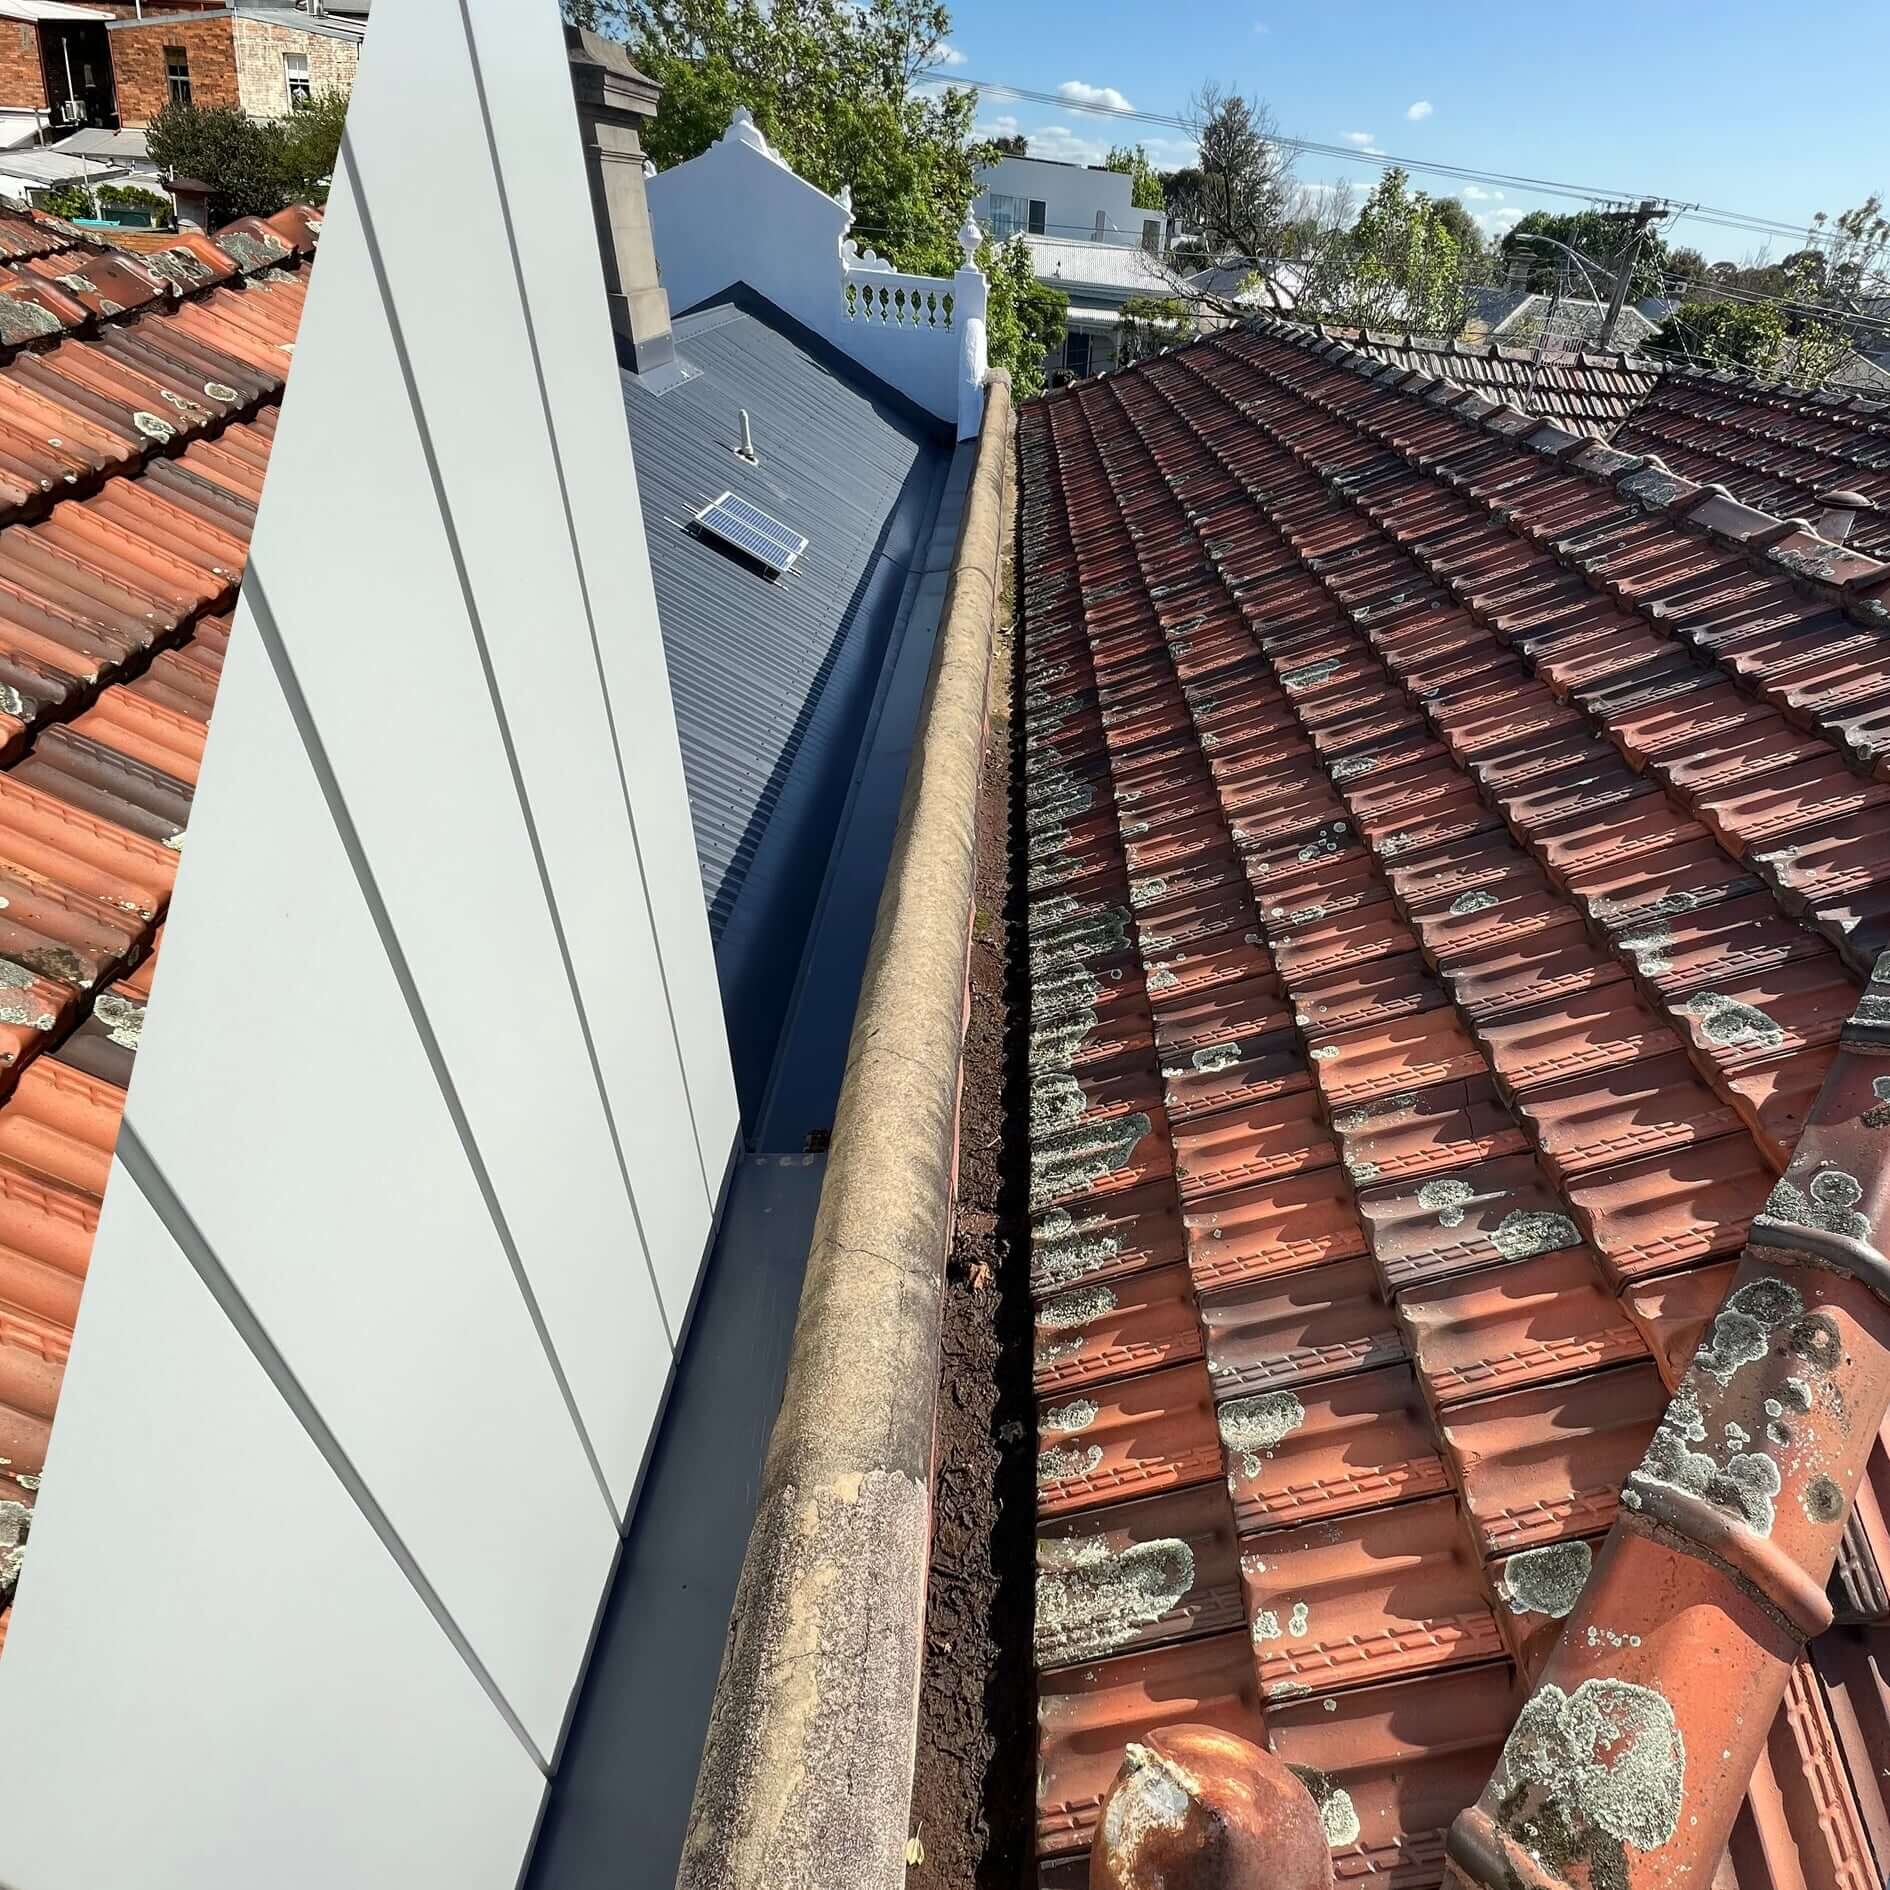 Roof leak terrcoate tiles new drains blend